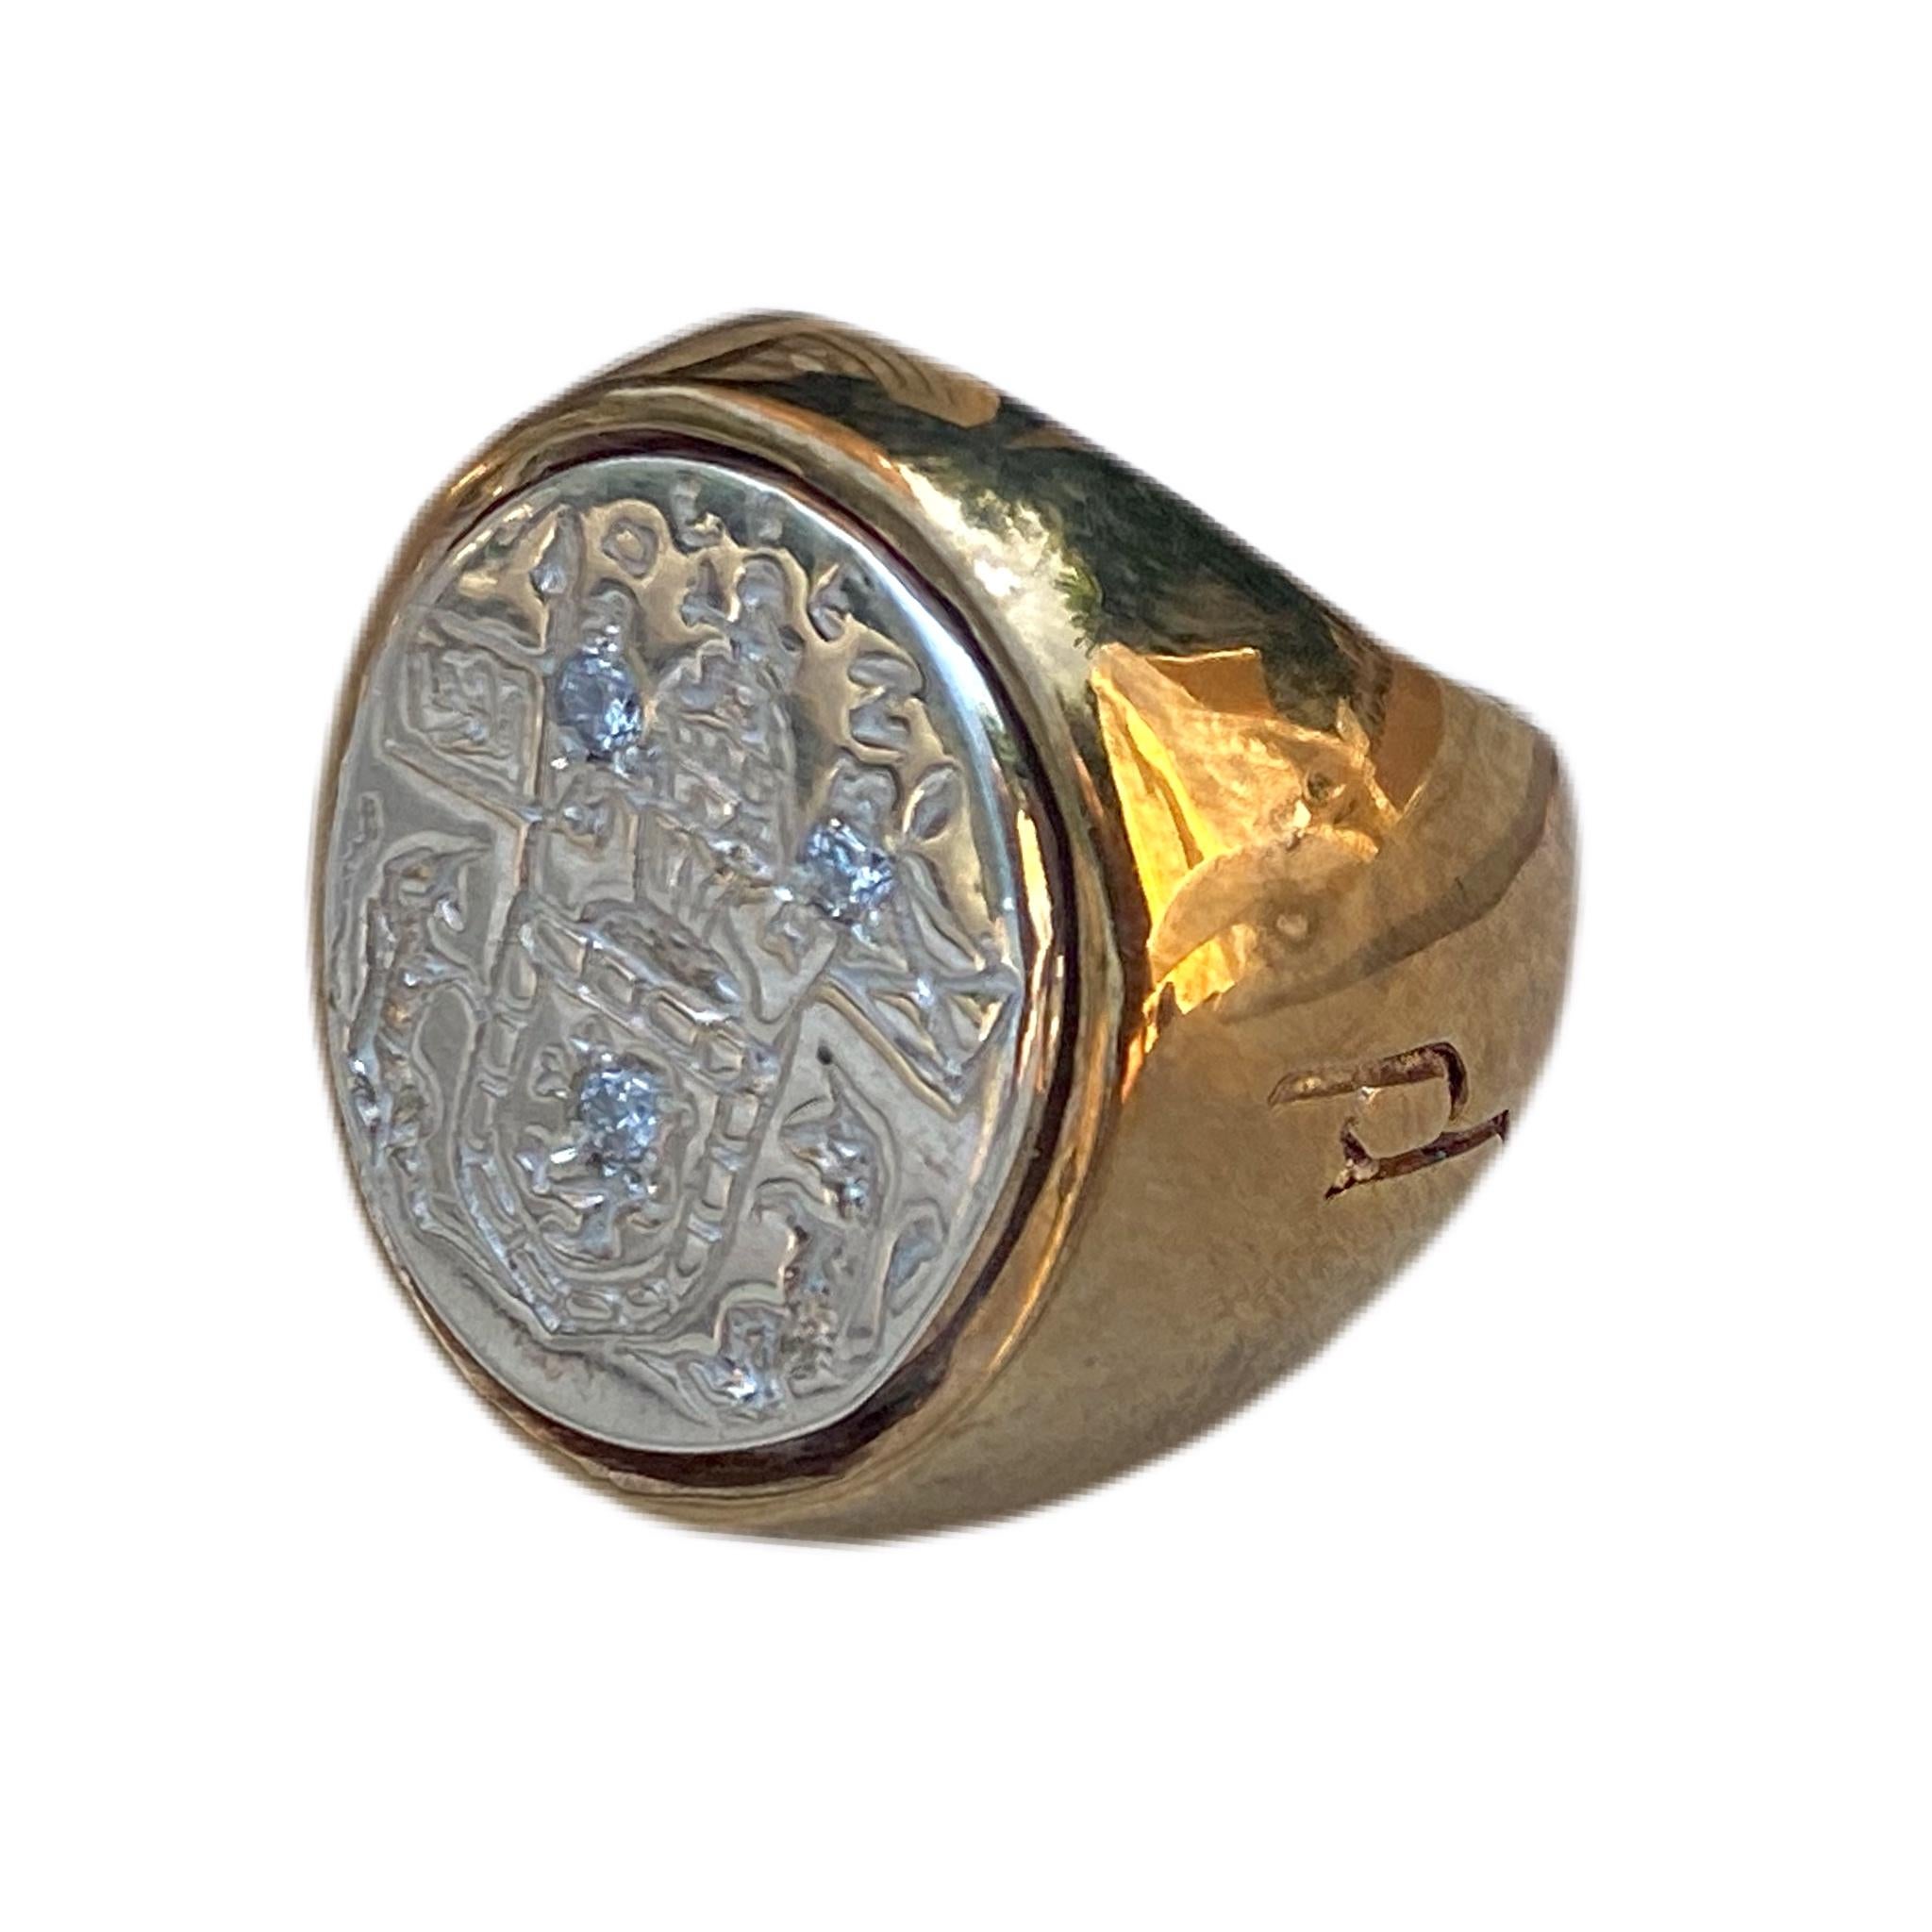 3 Stück Crest Signet Ring Sterling Silber Bronze Weiß Diamant Unisex J Dauphin kann von Frauen oder Männern getragen werden.

Inspiriert durch den Ring der Königin Maria von Schottland. Goldener Siegelring; graviert; Schultern mit Blumen und